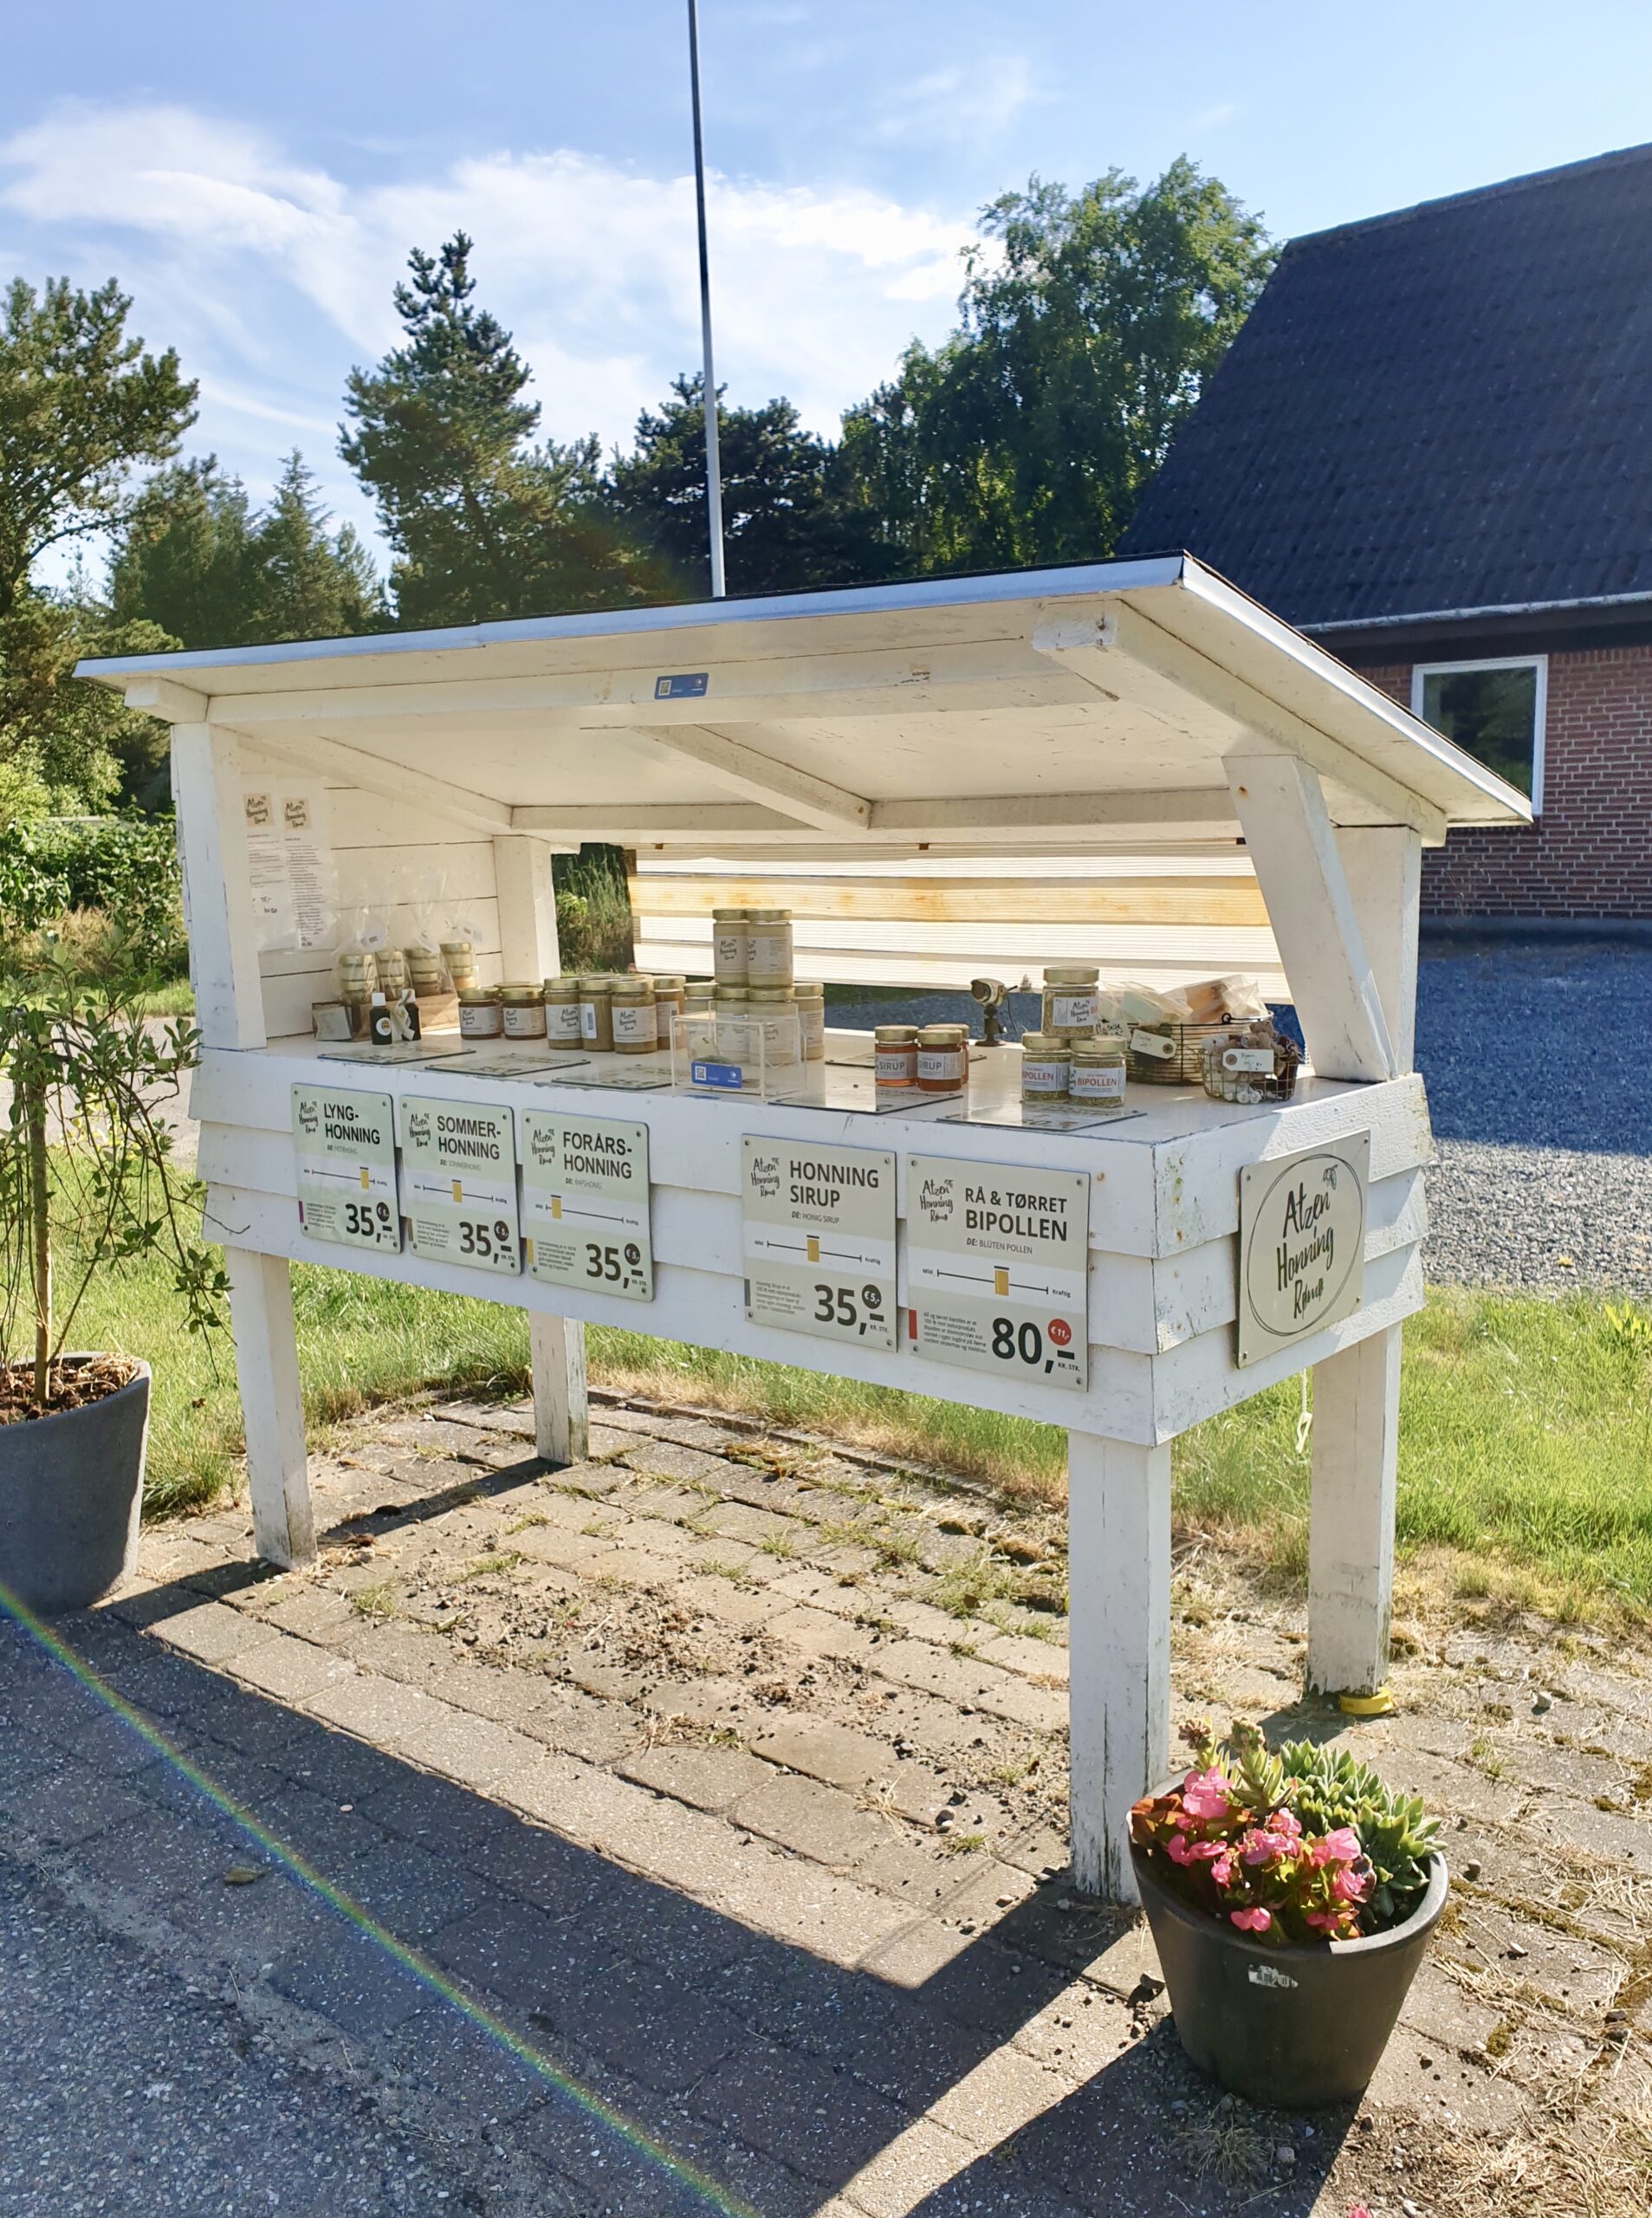 Honig am Straßenrand – Verkaufsstand in Dänemark – Foto: Nicole Schmidt